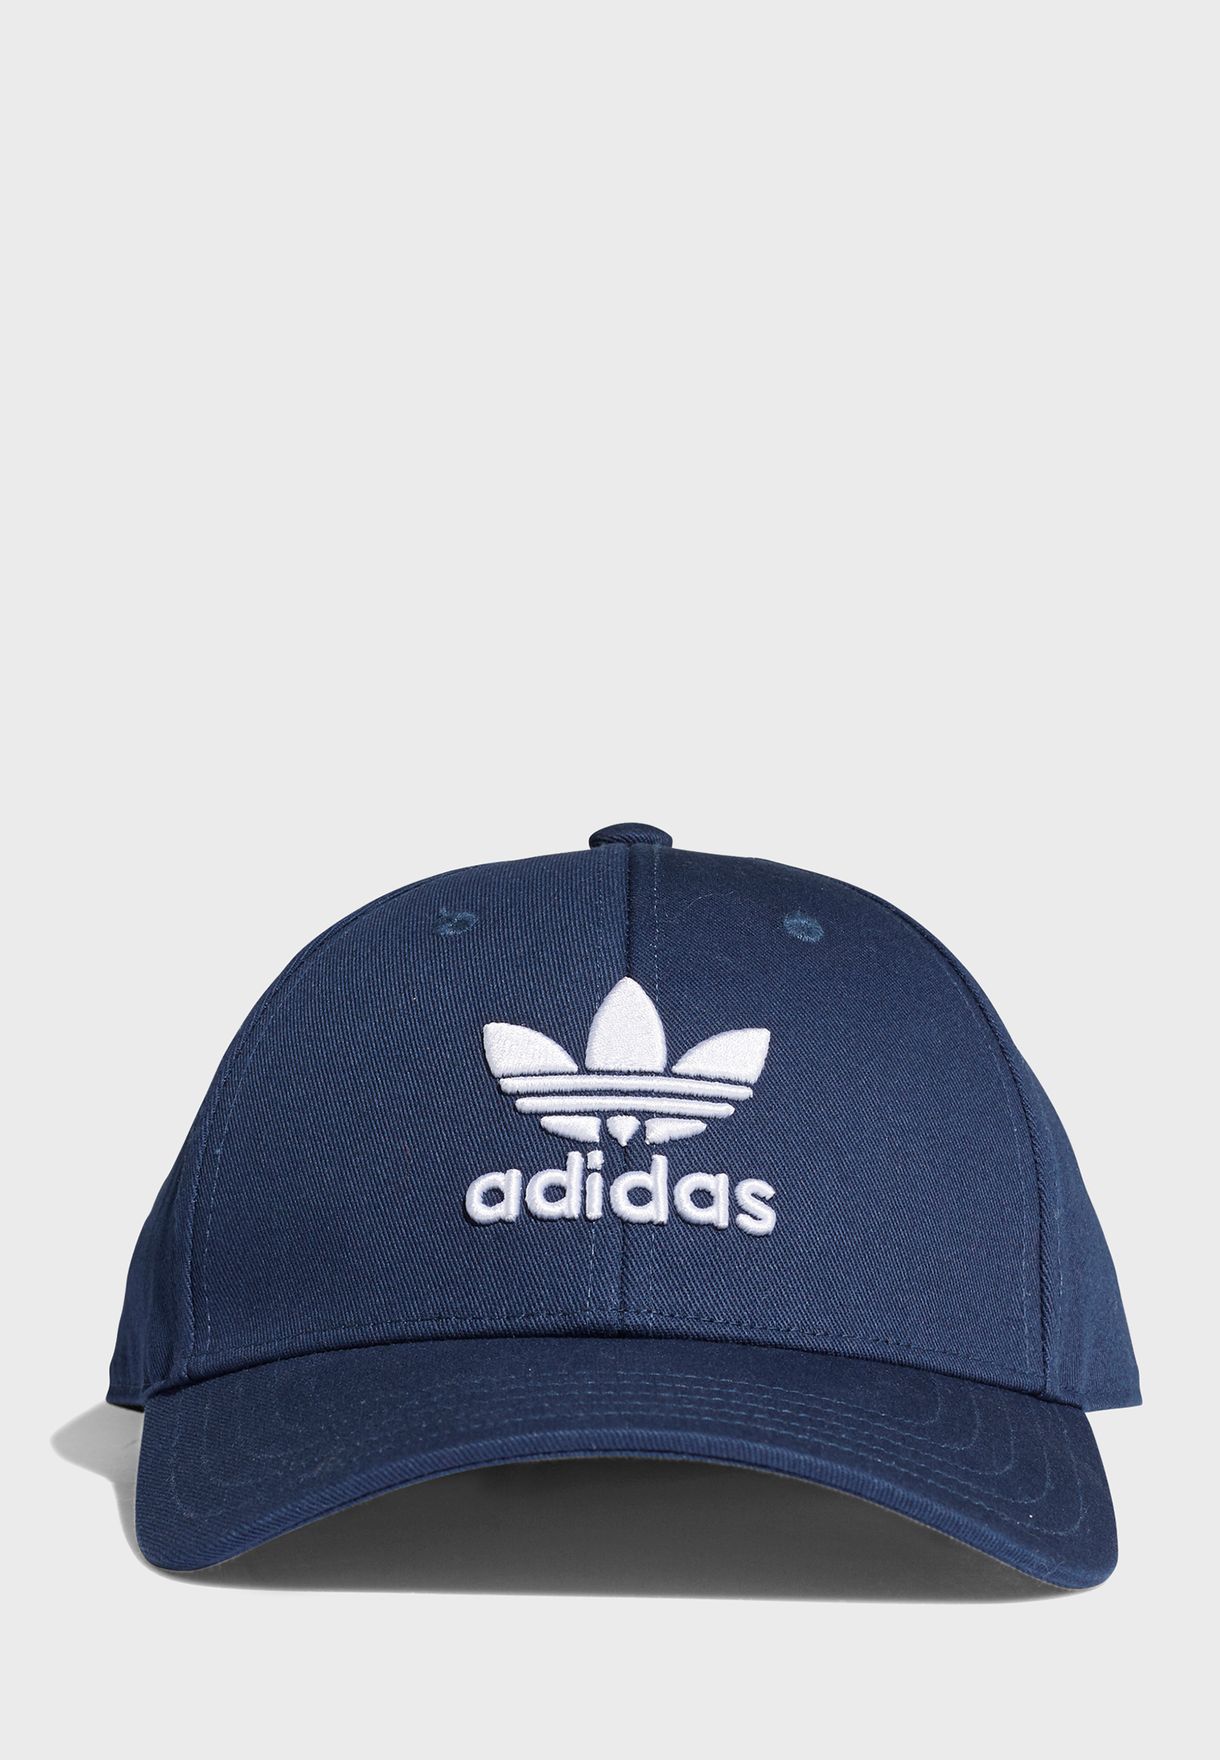 adidas classic trefoil cap